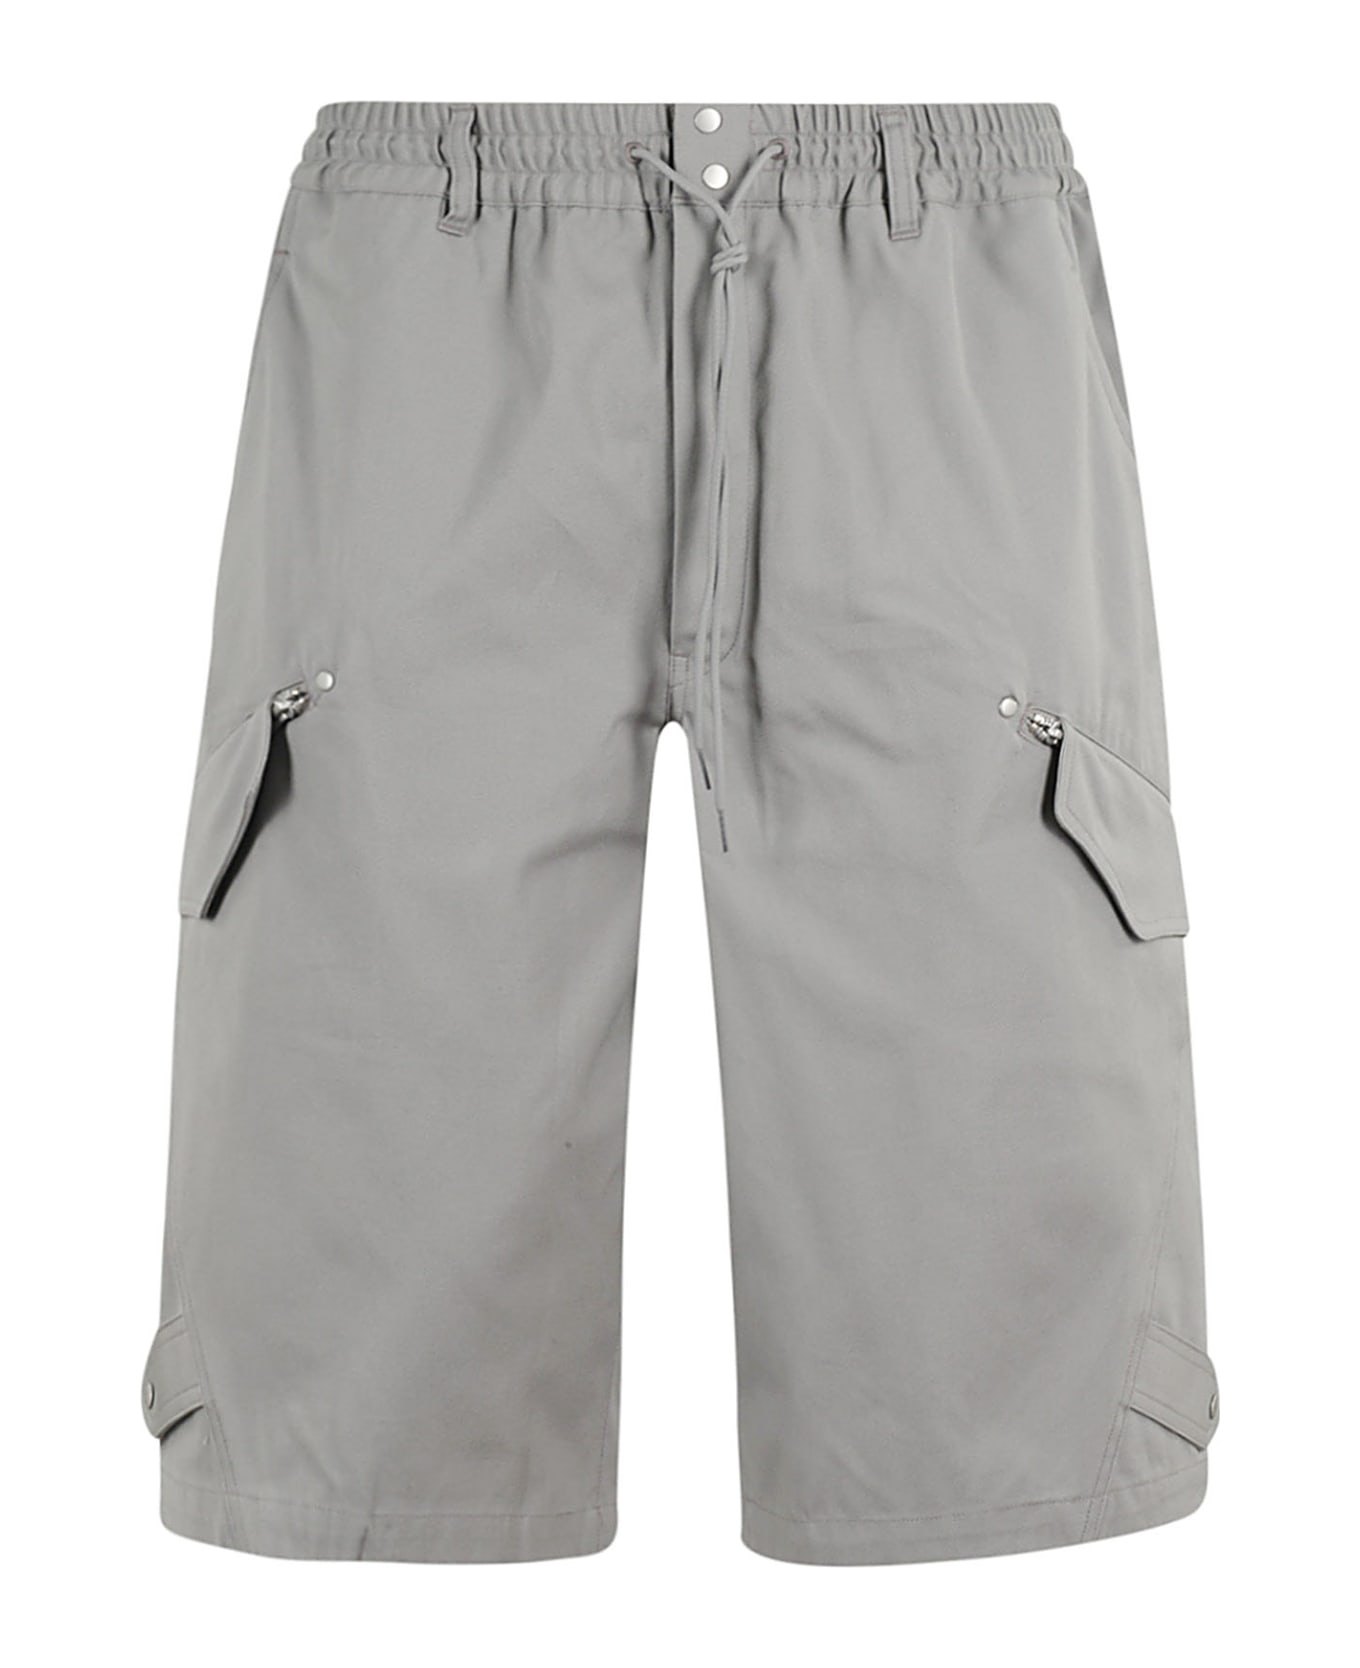 Y-3 Shorts Chsogr - Grey